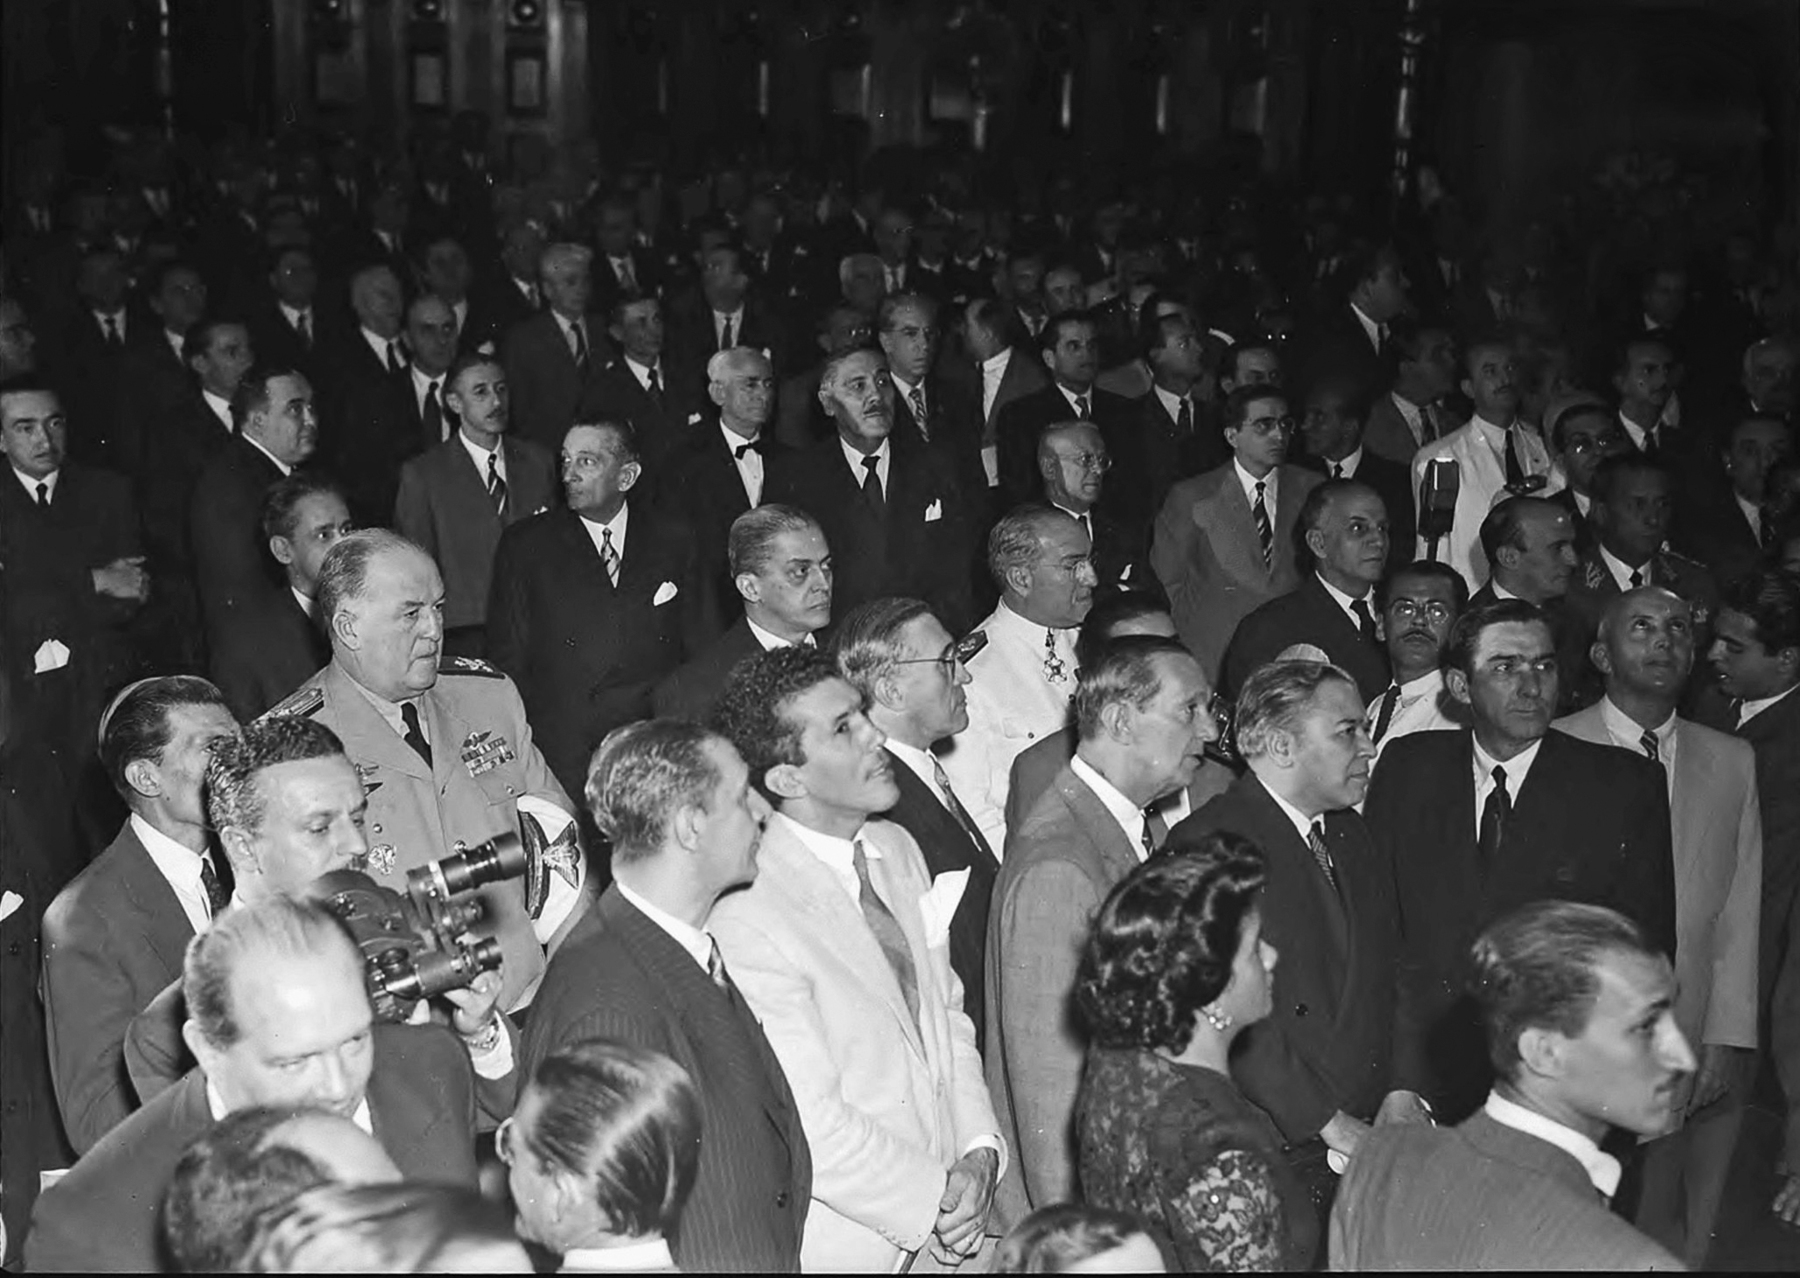 Fotografia em preto e branco. Um grupo de homens aglomerados em um salão, a maioria vestindo paletós escuros. No canto inferior direito, nota-se a presença de uma única mulher, de perfil.